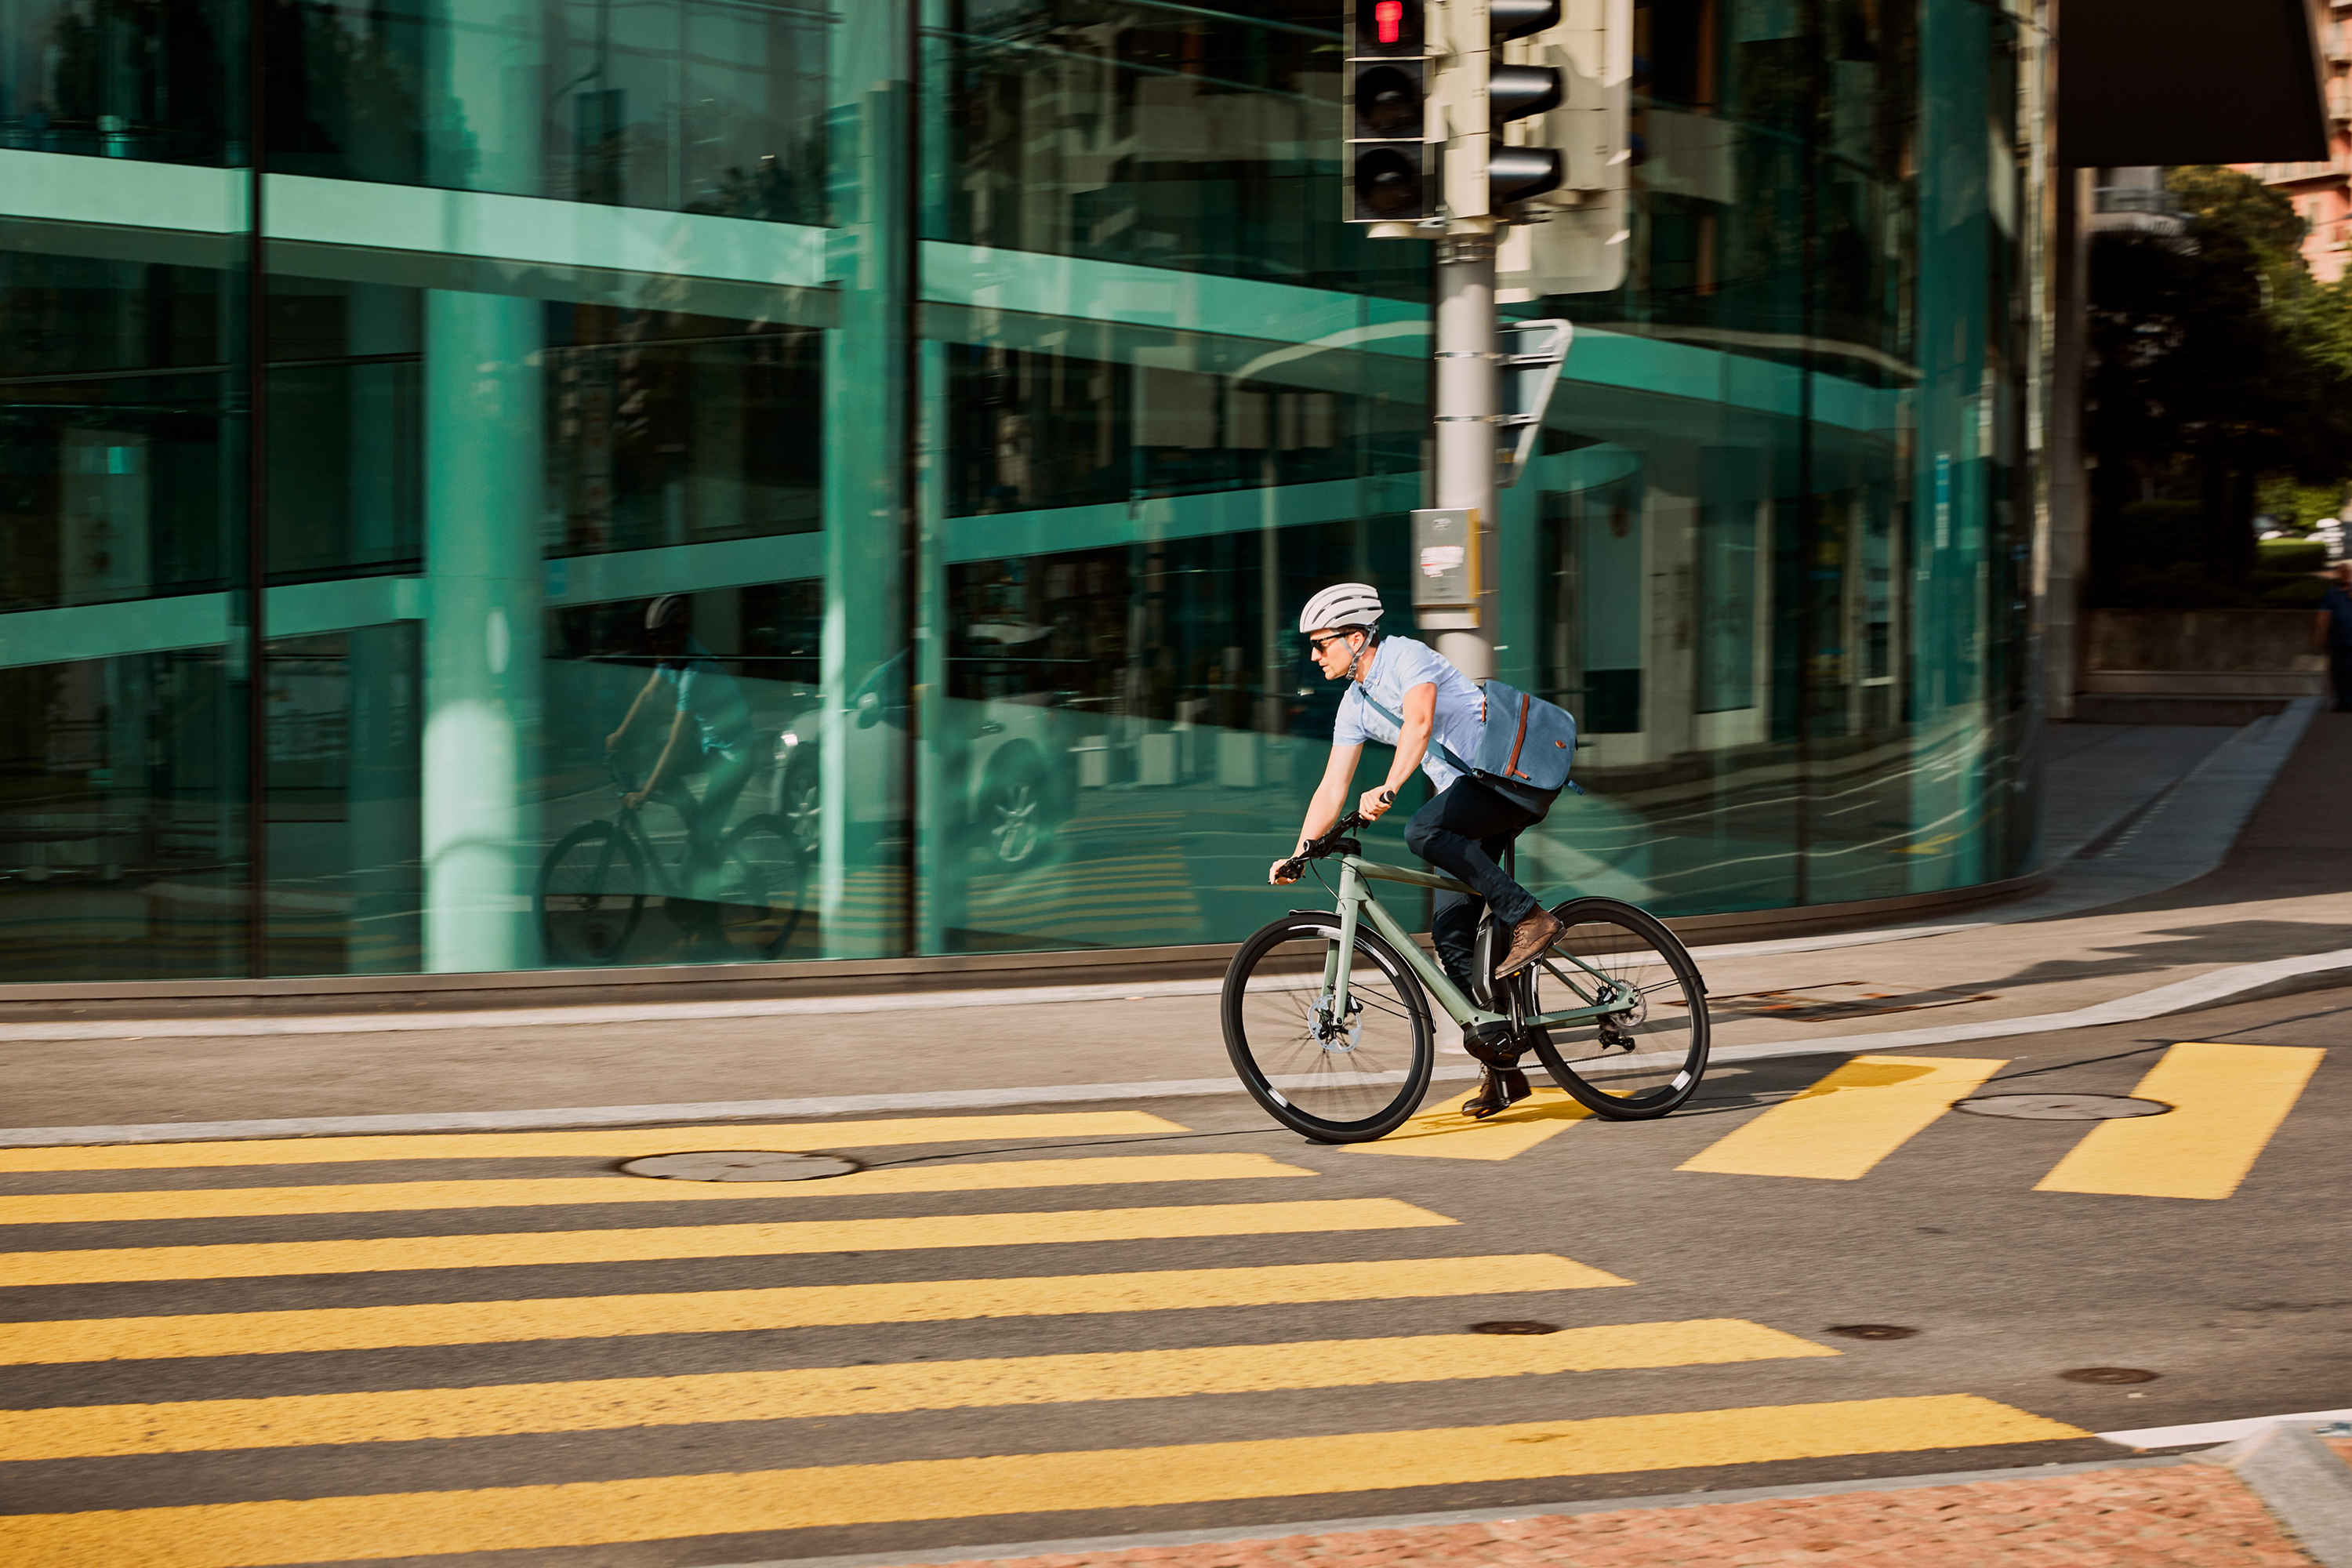 Nowe e-rowery BMC Alpenchallenge AMP City – styl i miejska funkcjonalność